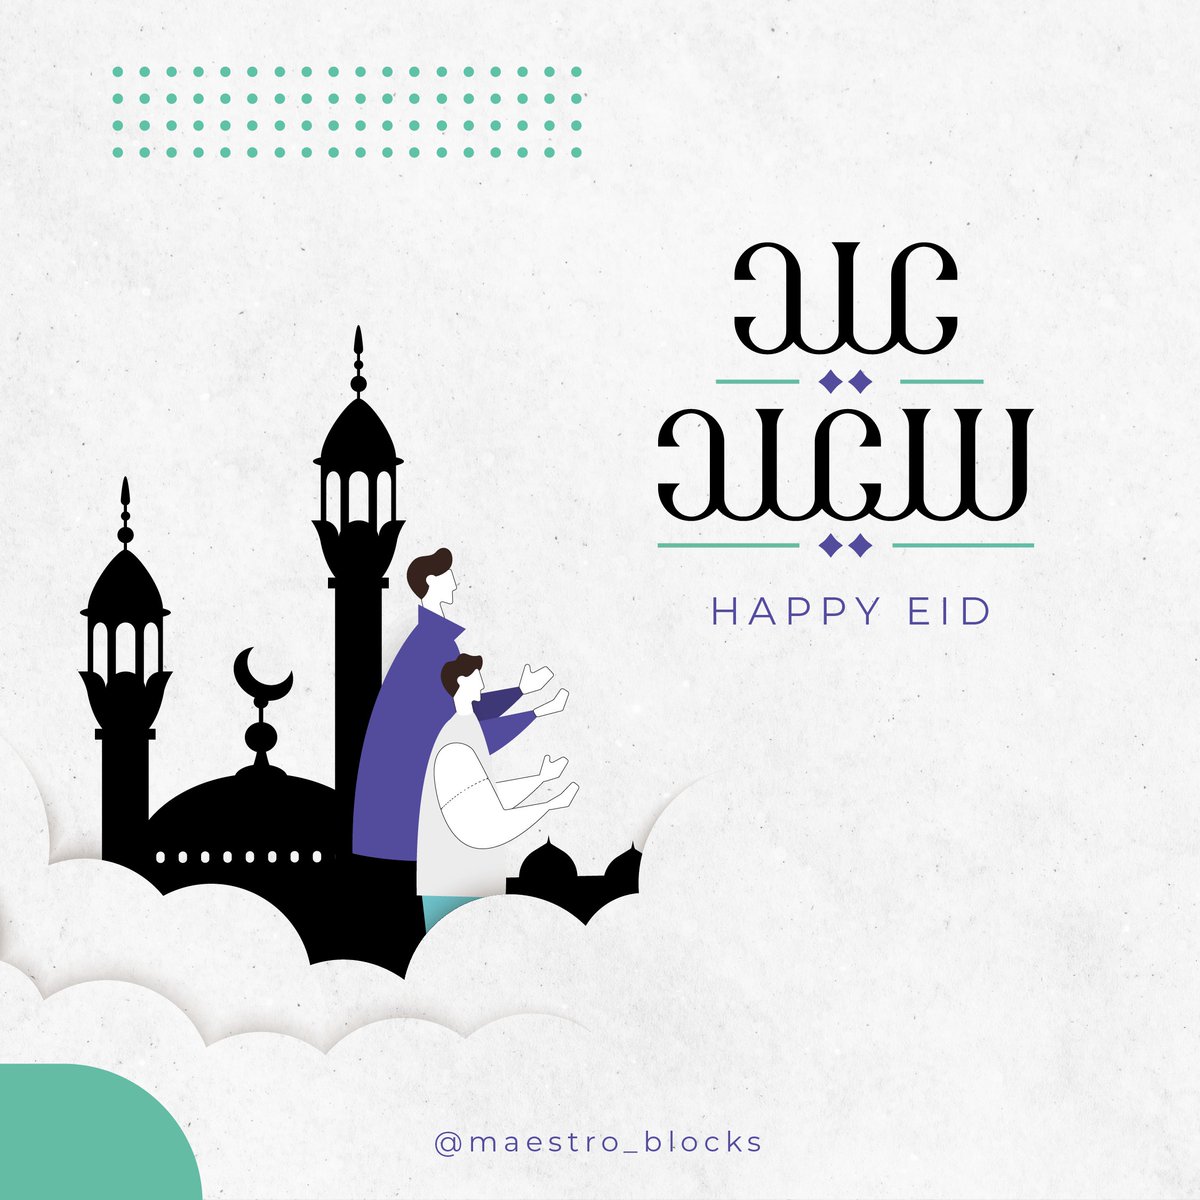 كل عام وأنتم بخير بحلول عيد الفطر المبارك

Happy Eid Al-Fitr

#Eid_AlFitr #عيد_الفطر